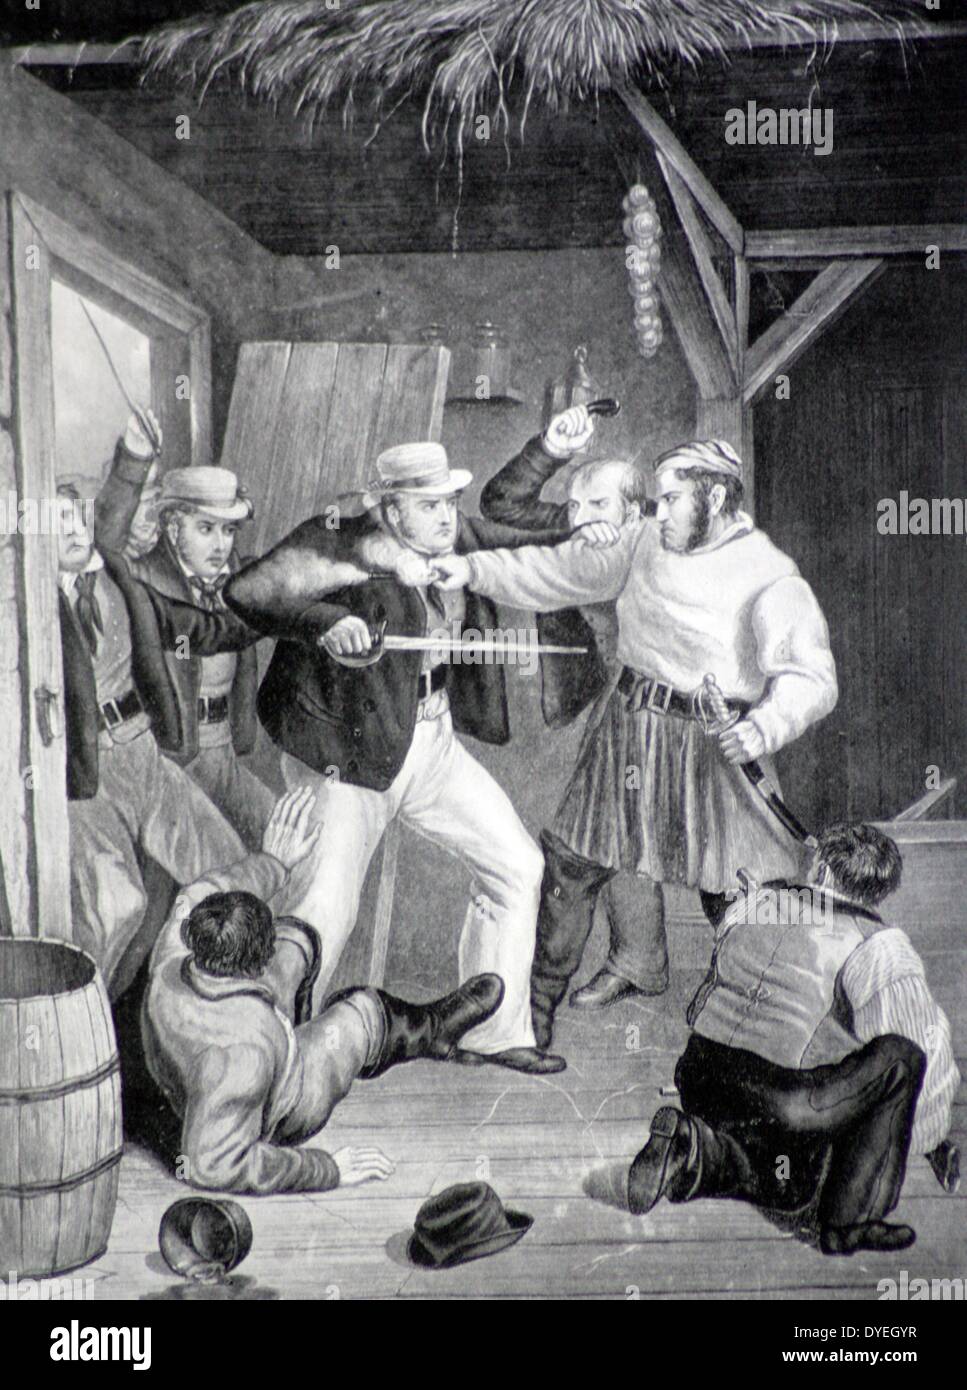 Schmuggler durch Einnahmen Männer überrascht. Nach dem Ende der Napoleonischen Kriege bis in die späten 30er Jahre, hatten die Behörden strenge Maßnahmen gegen die Schmuggler zu nehmen, besonders in Kent und Sussex, und Kämpfe zwischen den Beiden waren nicht selten. Stockfoto